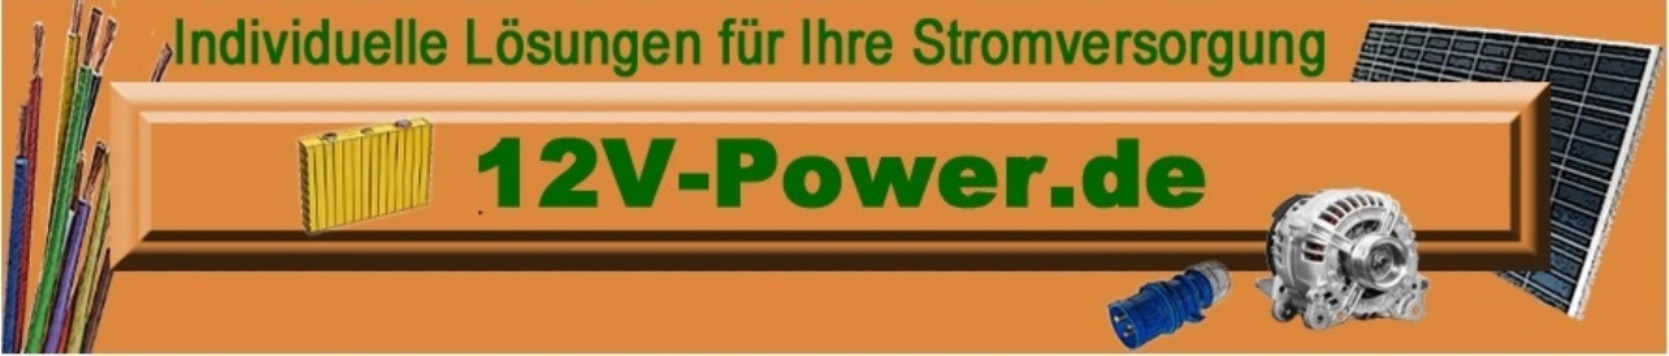 12V-Power.de